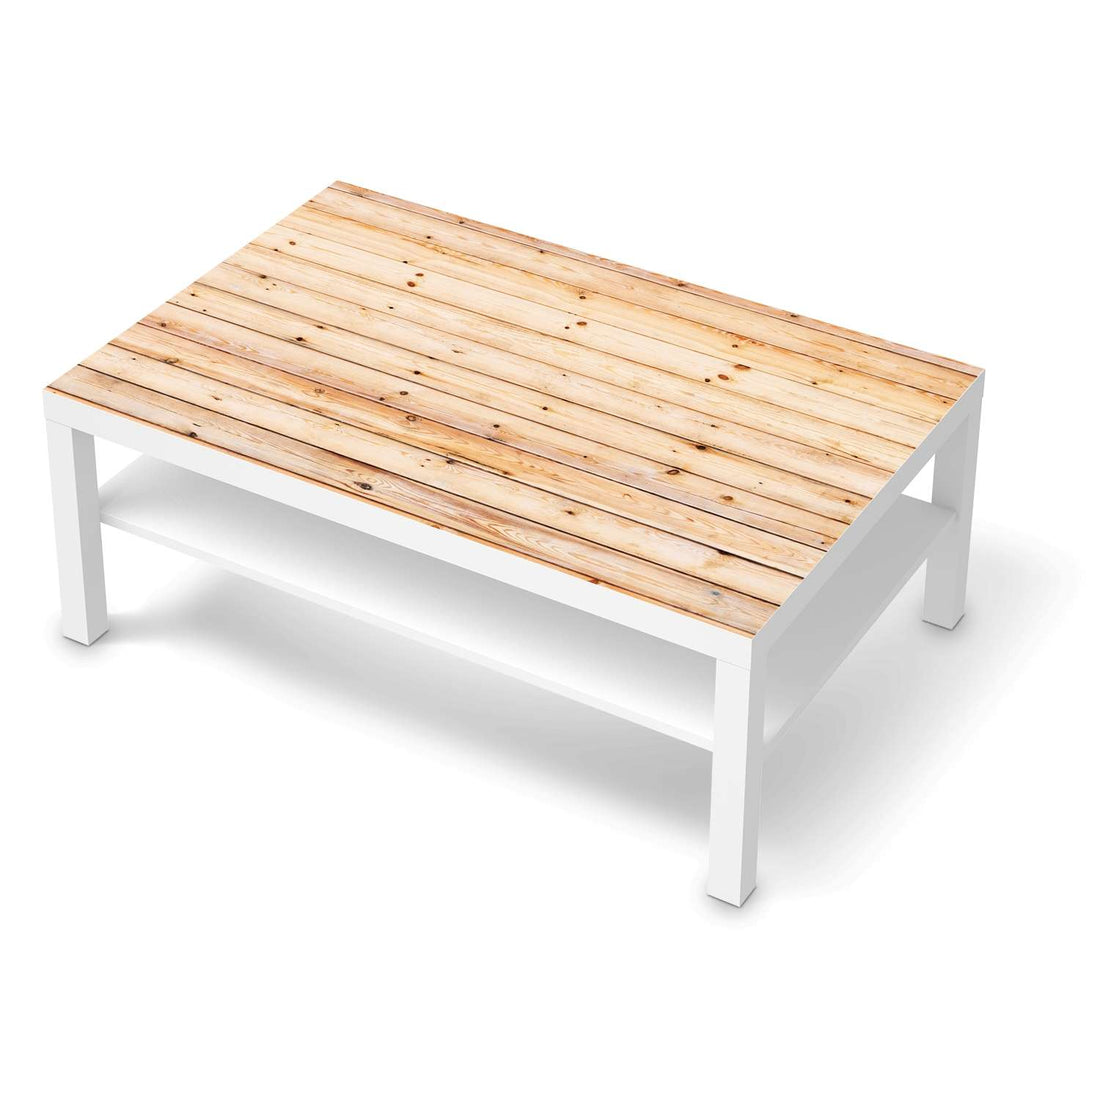 Klebefolie Bright Planks - IKEA Lack Tisch 118x78 cm - weiss